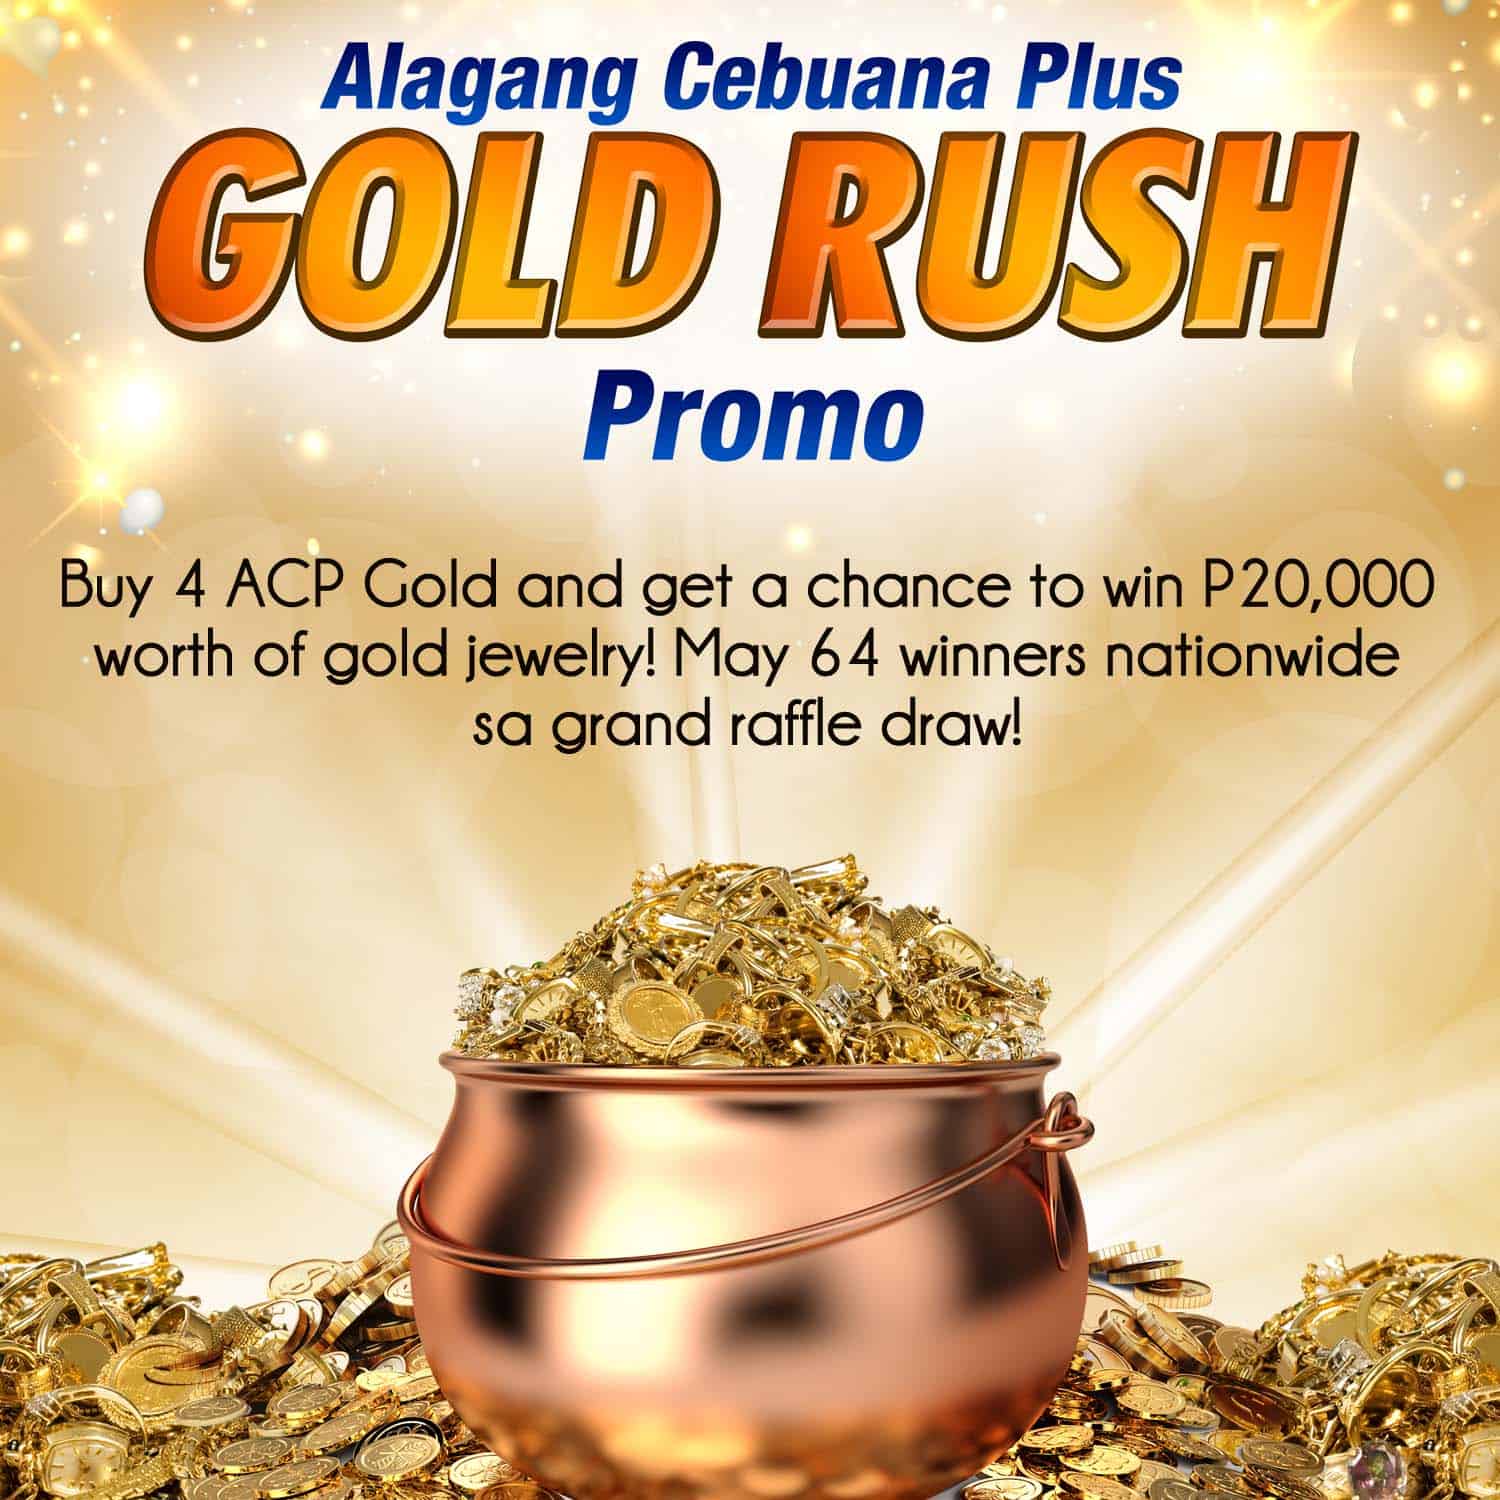 ACP Gold Rush Promo • Cebuana Lhuillier